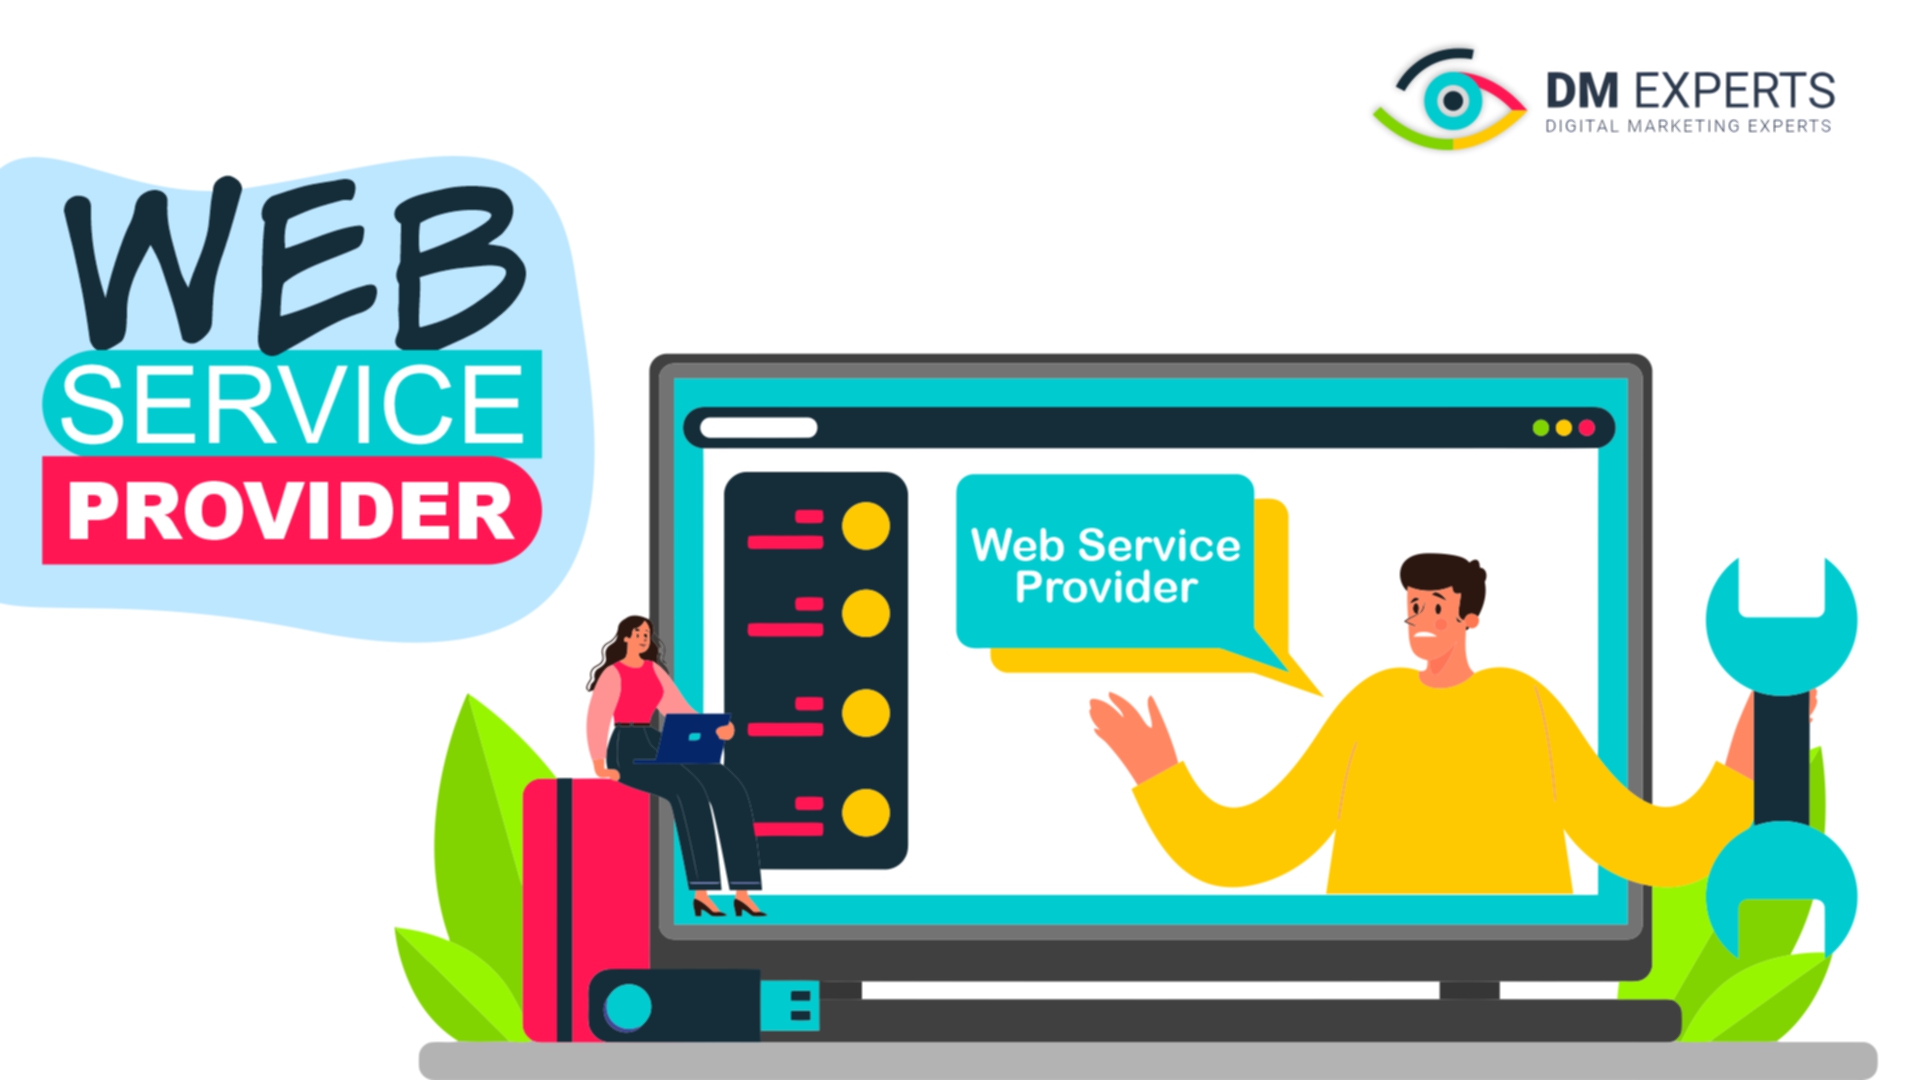 Web Service Provider 